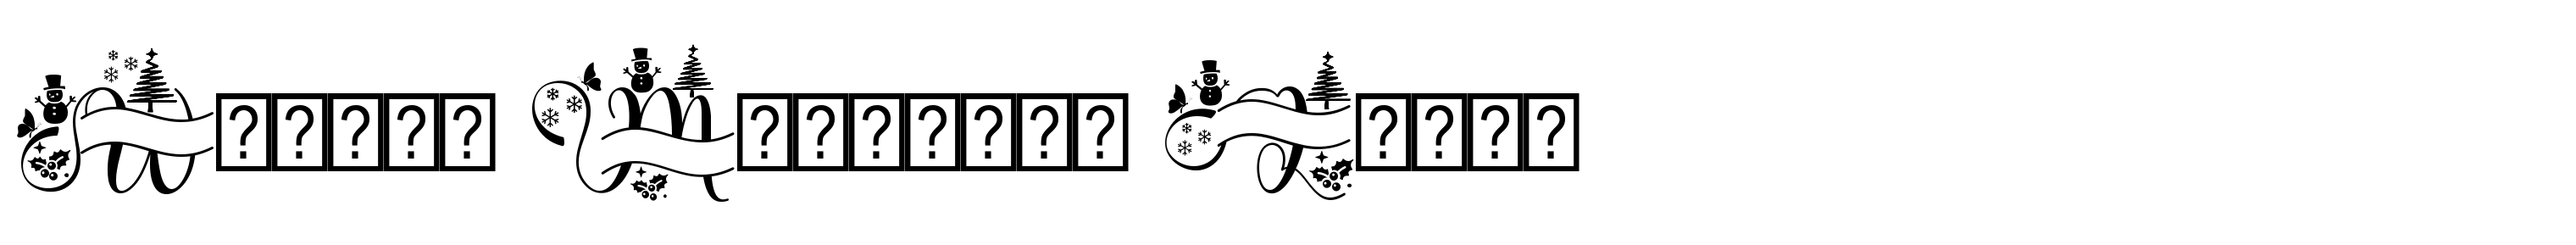 Winter Monogram Logos